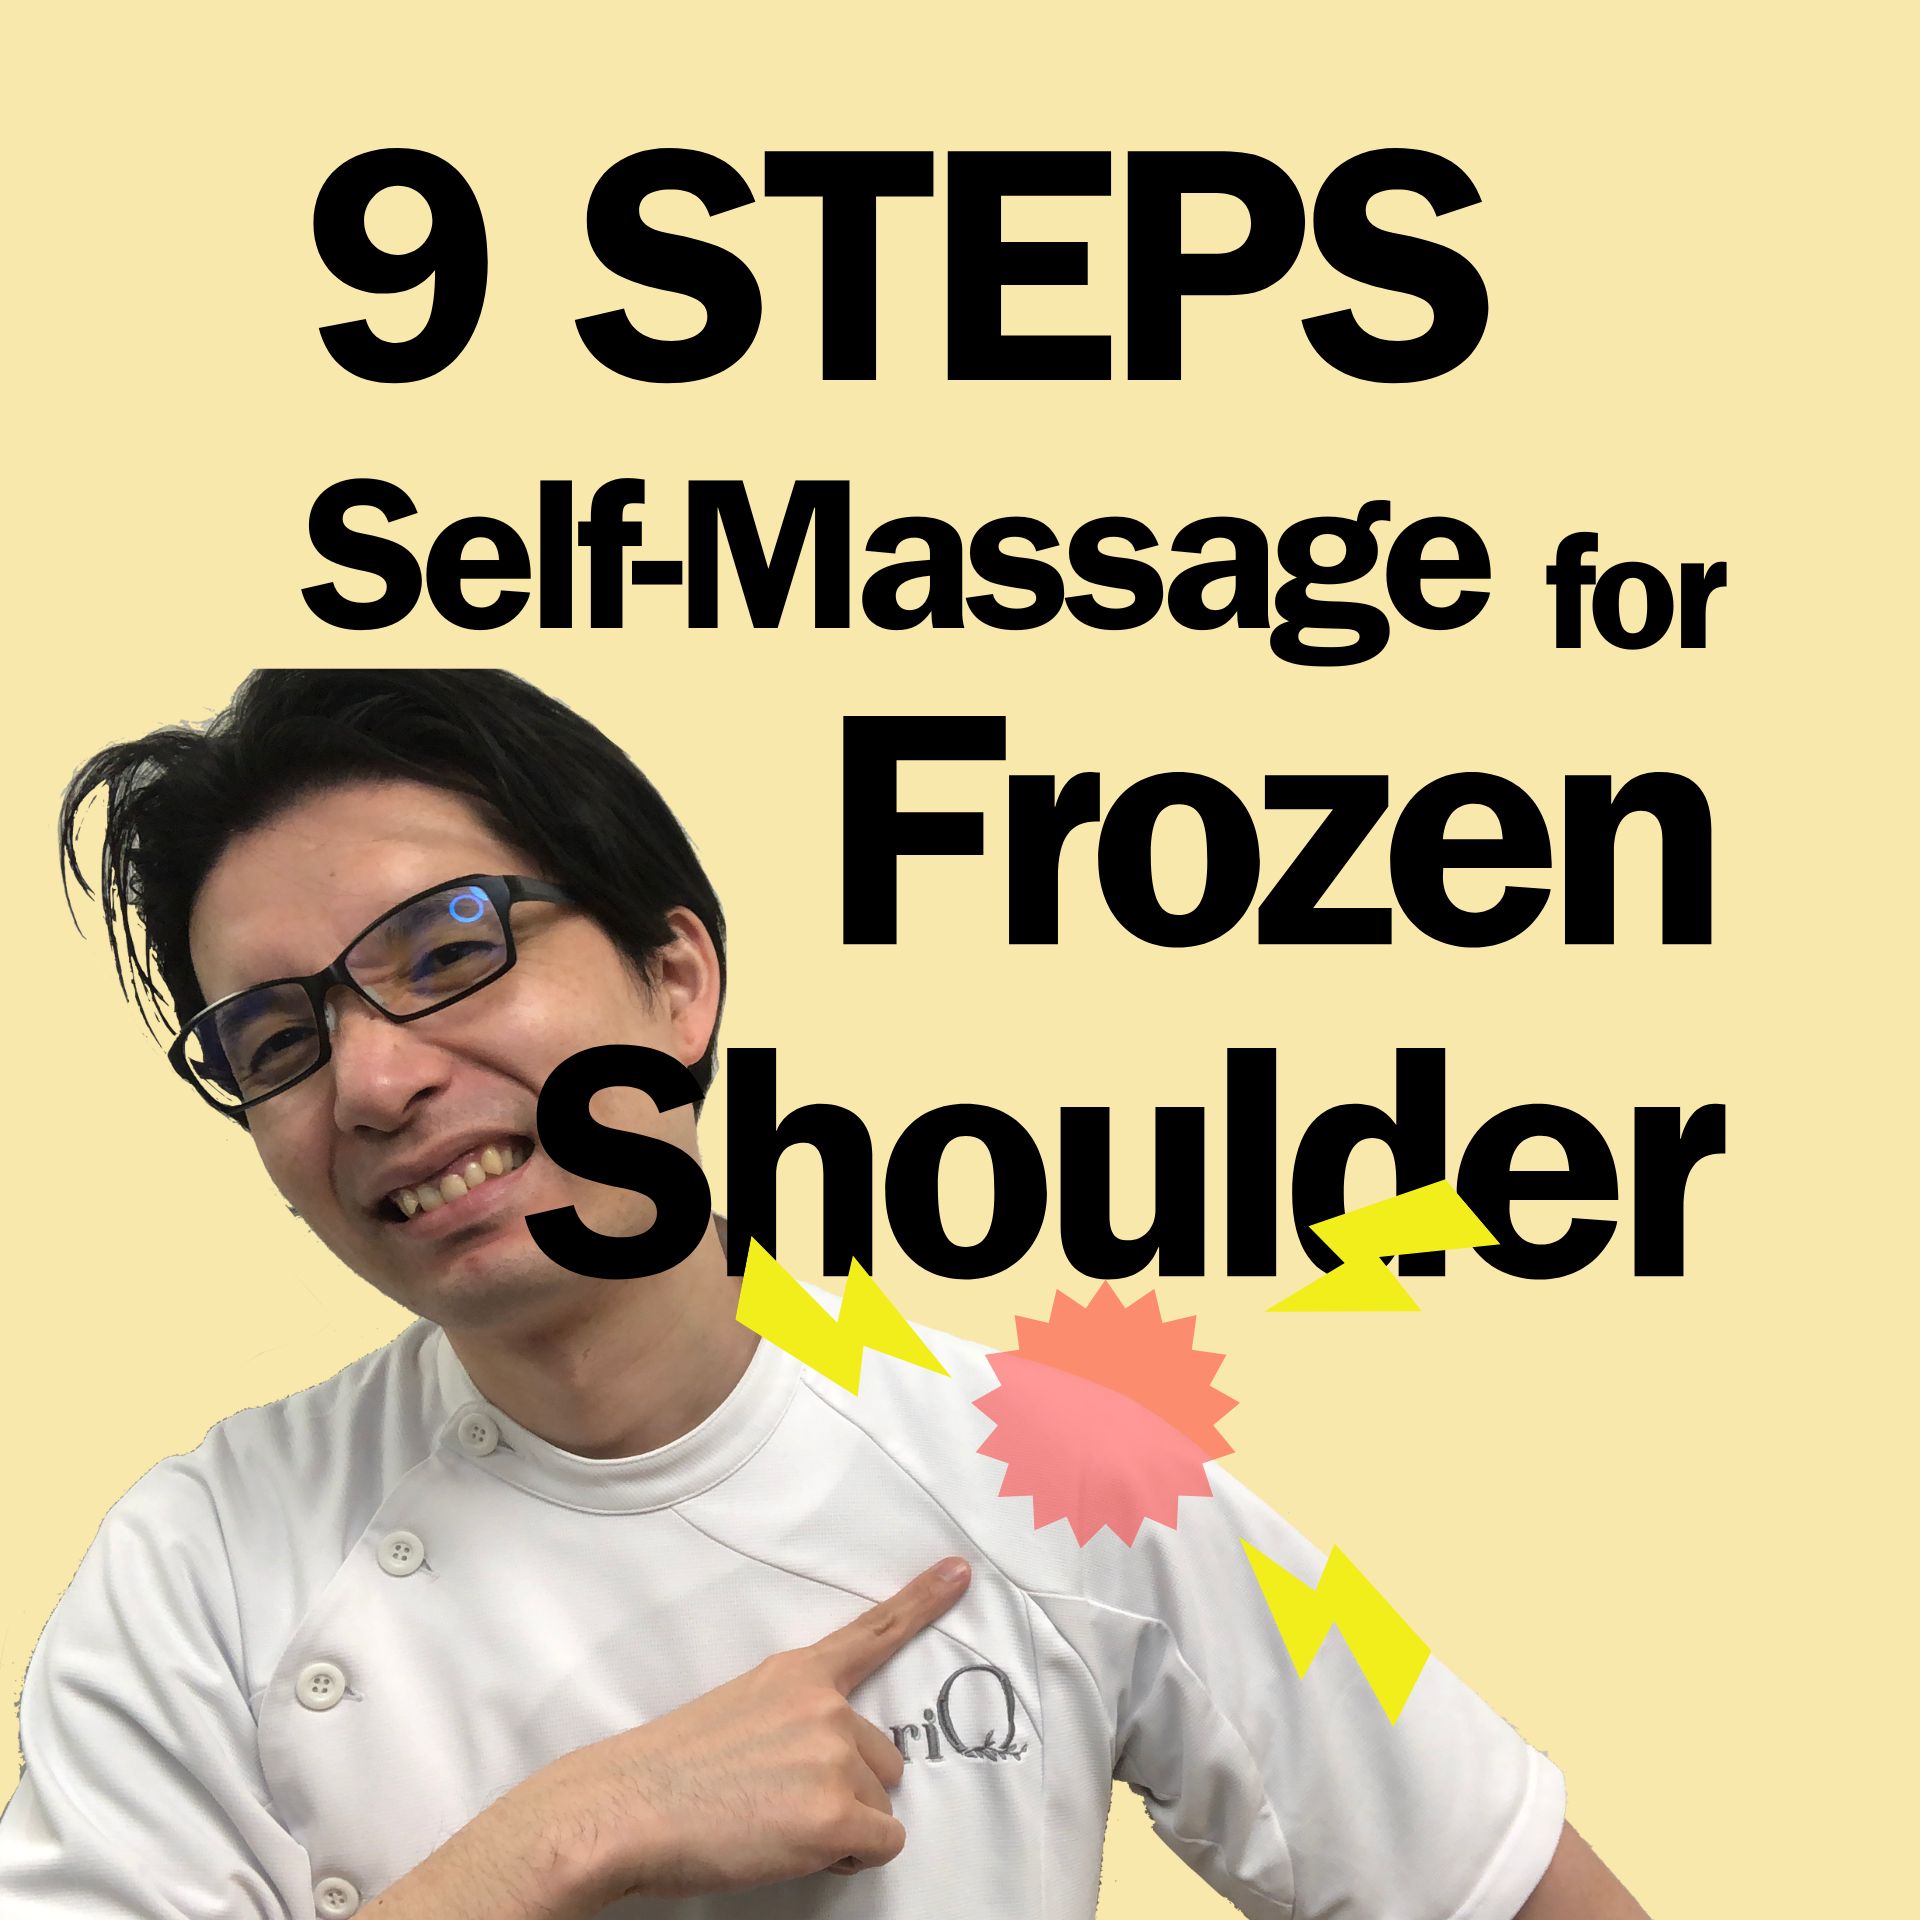 9 Steps Self-Massage for Frozen Shoulder